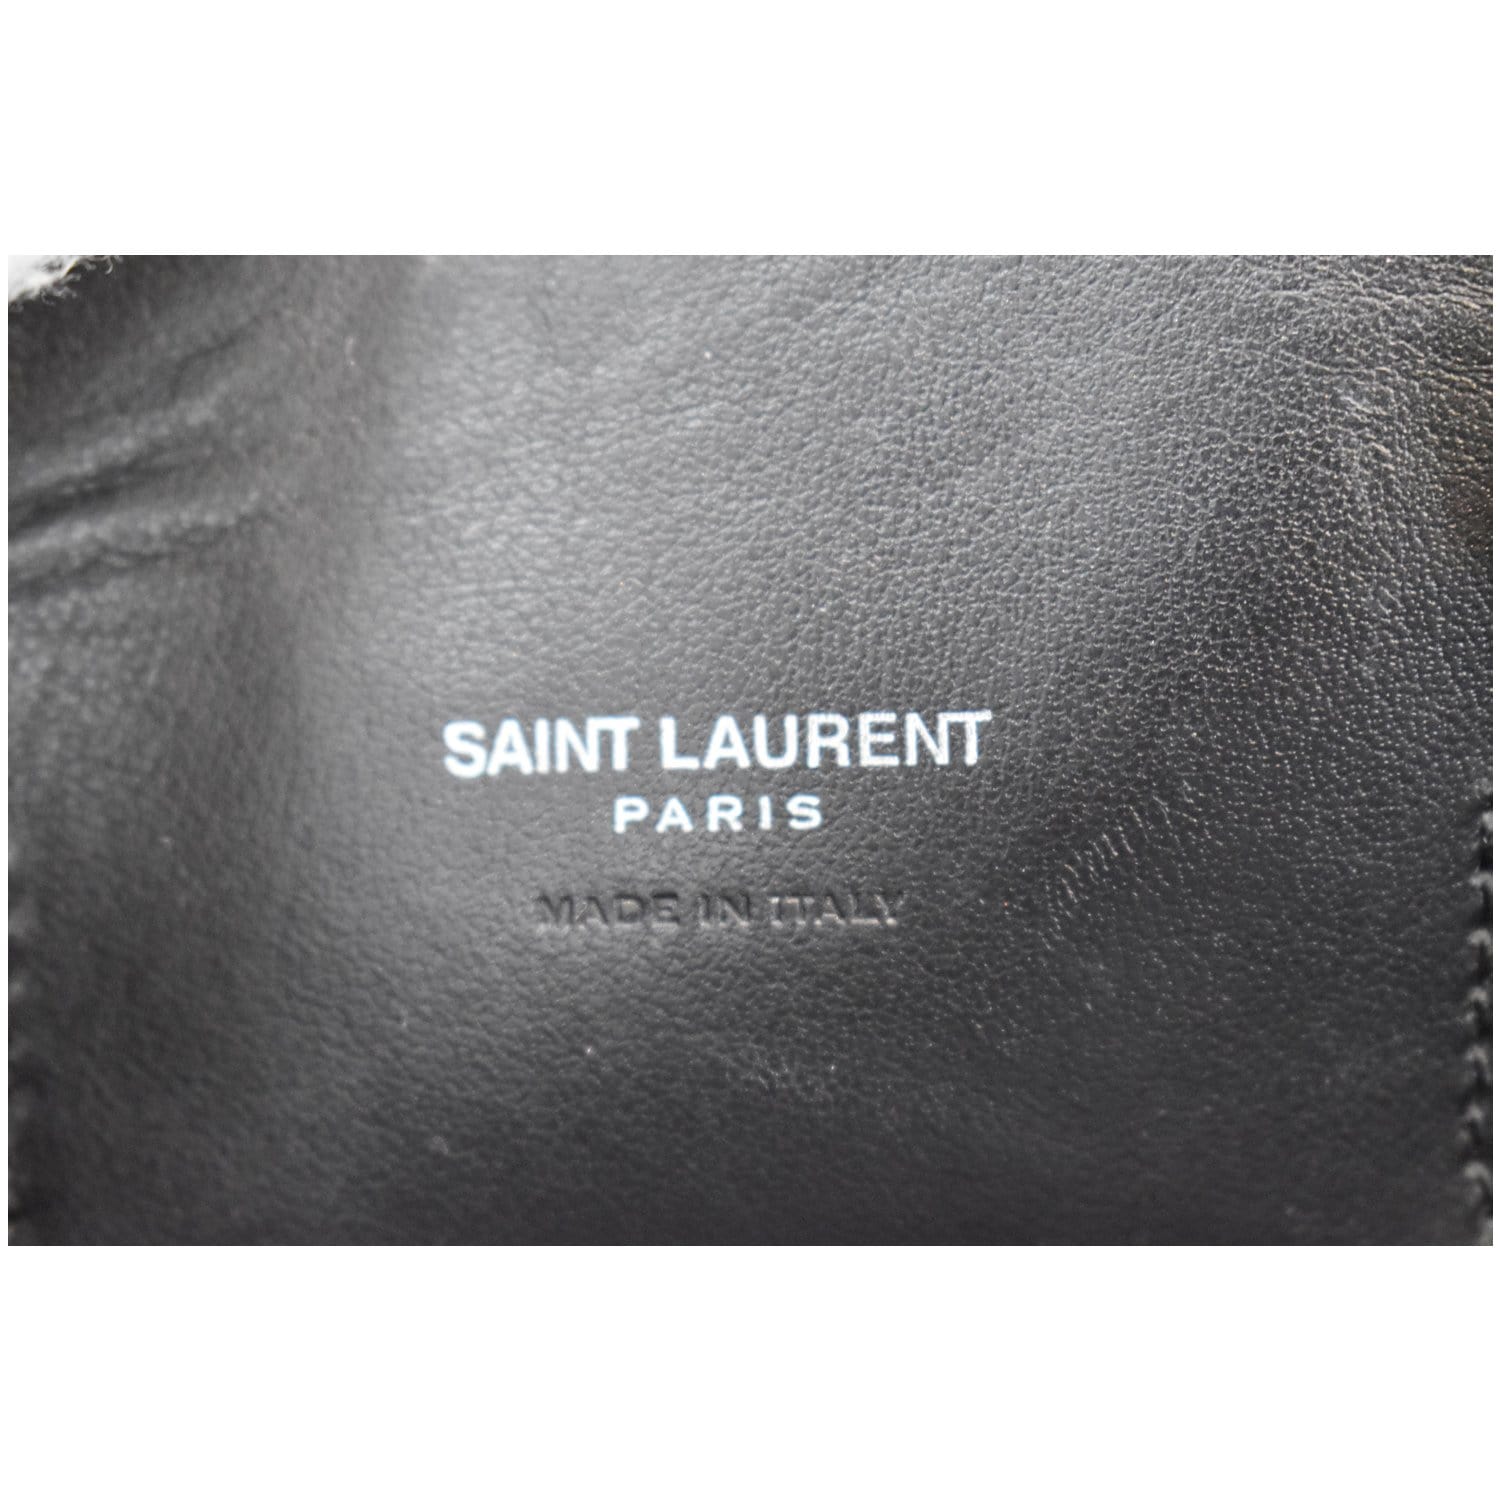 Saint Laurent Paris Black Croc Embossed Leather Baby Sac De Jour Tote Saint  Laurent Paris